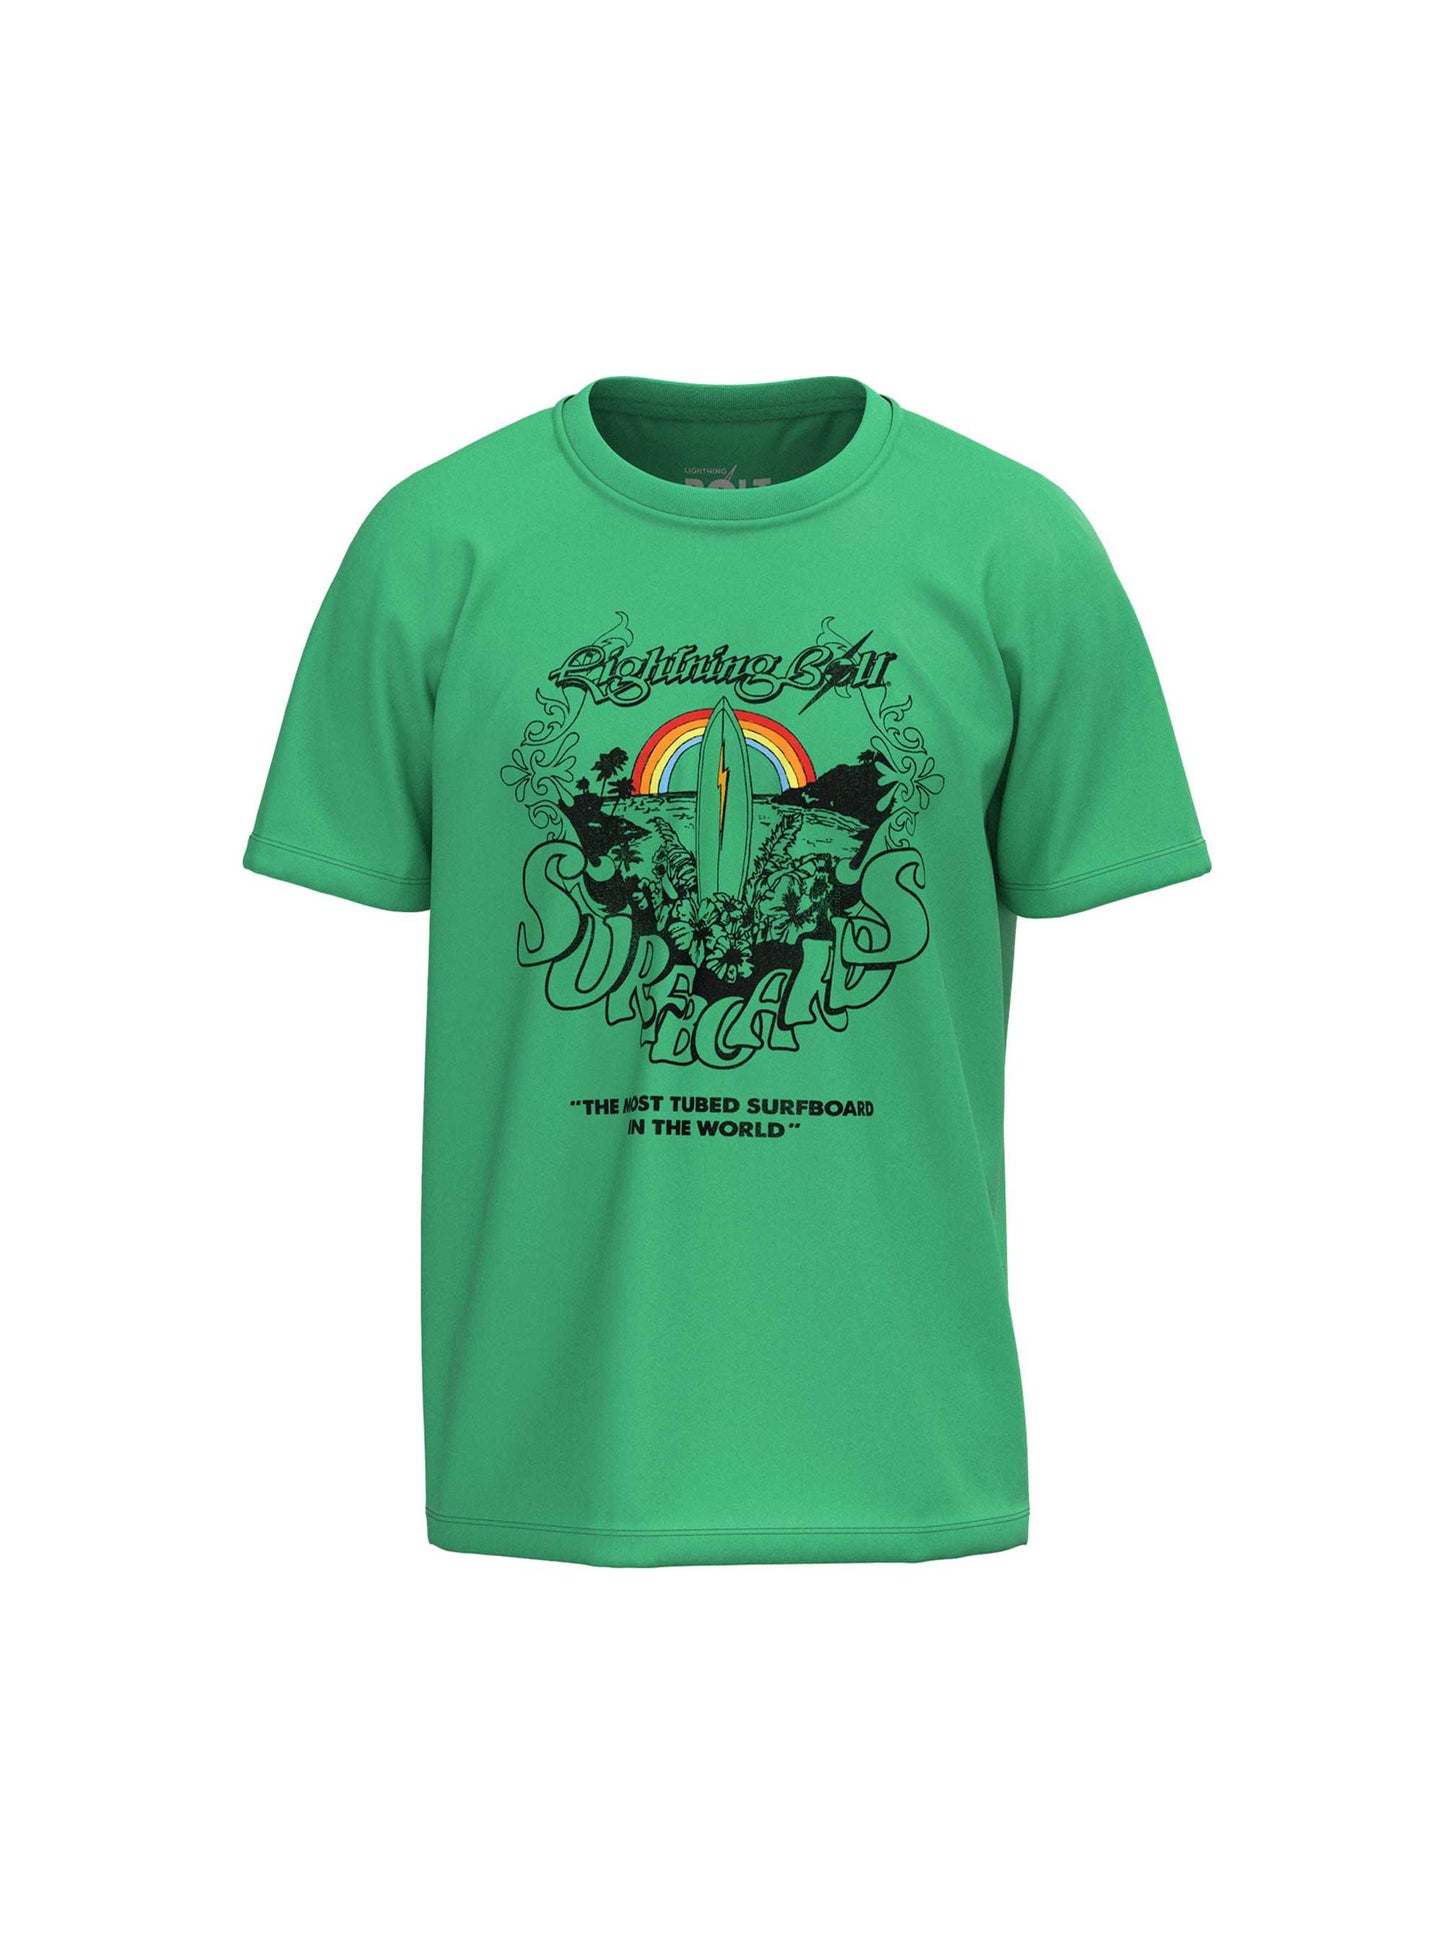 Camiseta De Manga Corta Lightning Bolt Tubed Surfboards T-shirt - verde - 